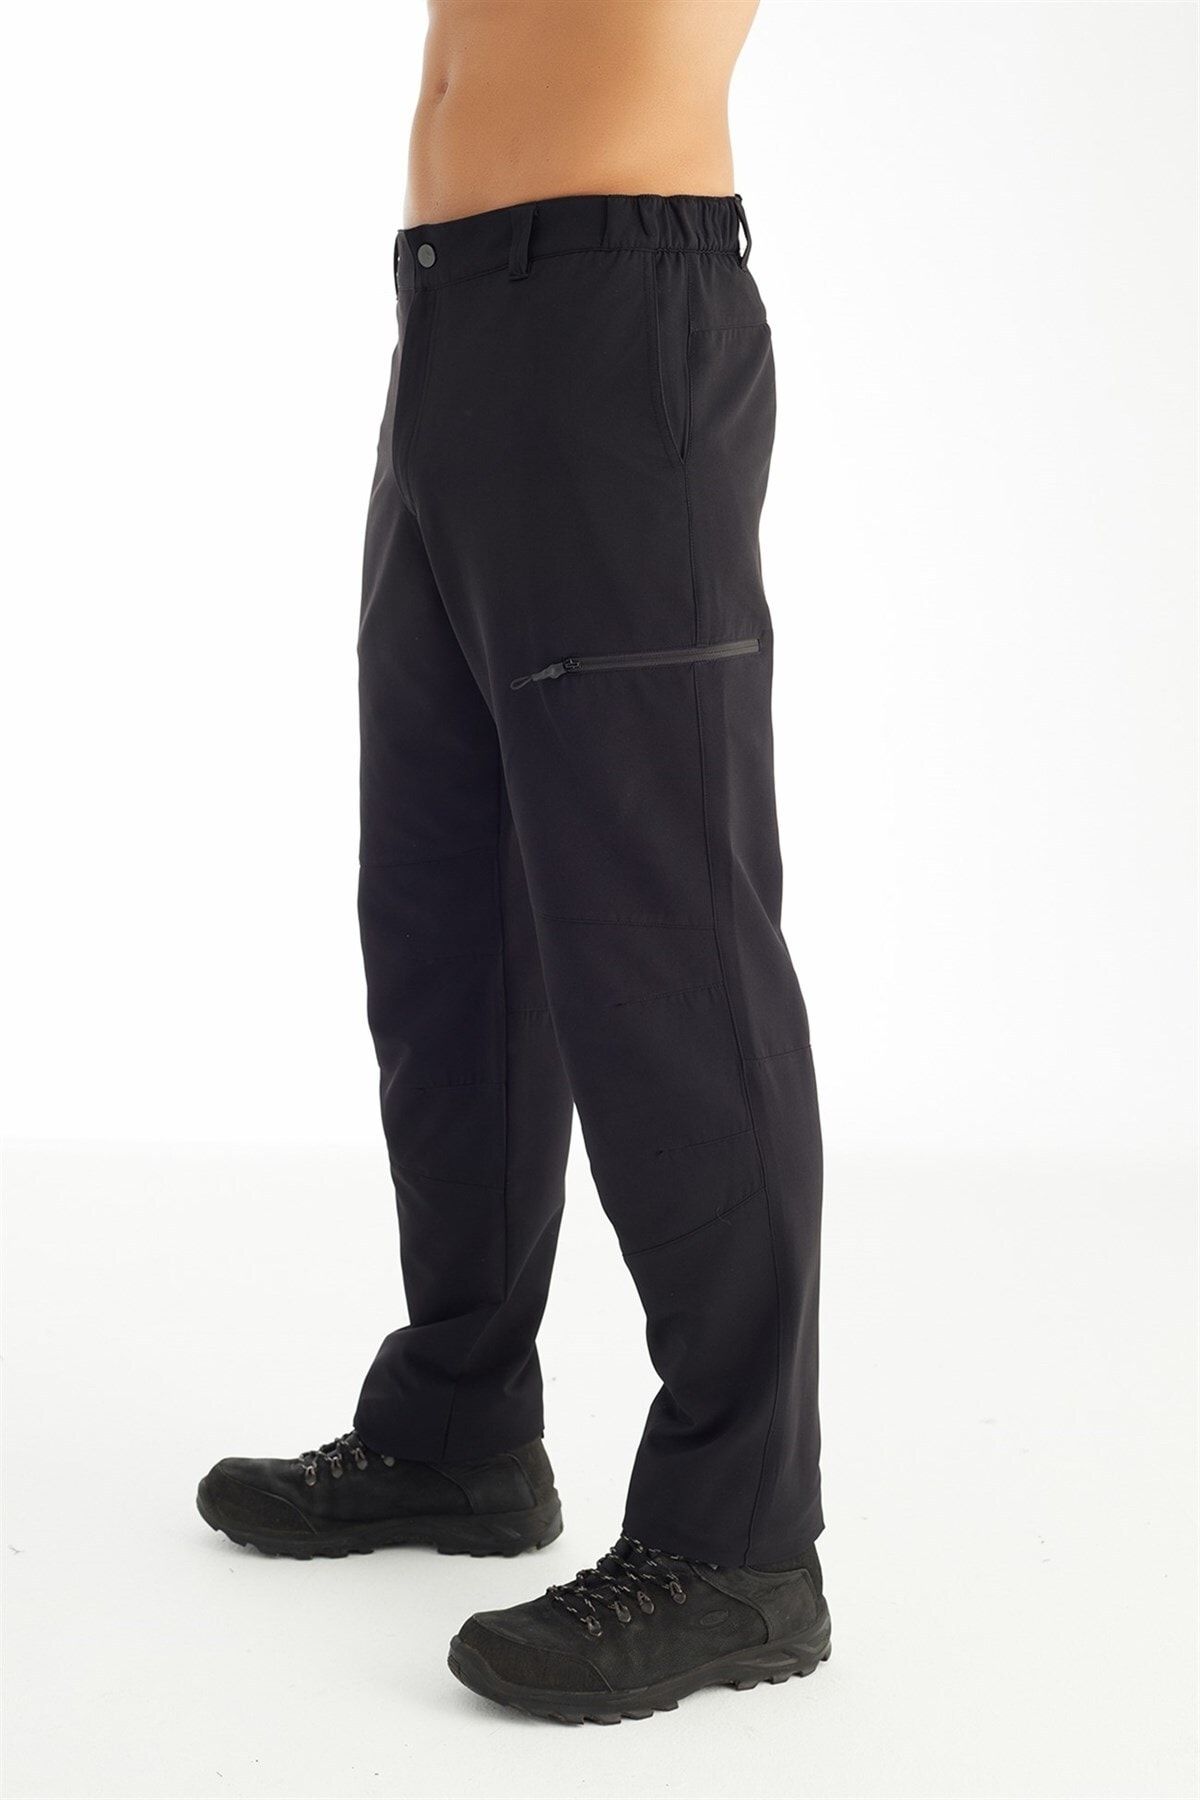 Crozwise Outdoor - Erkek Siyah Içi Polarlı Likralı Spor Pantolon - 2187-10